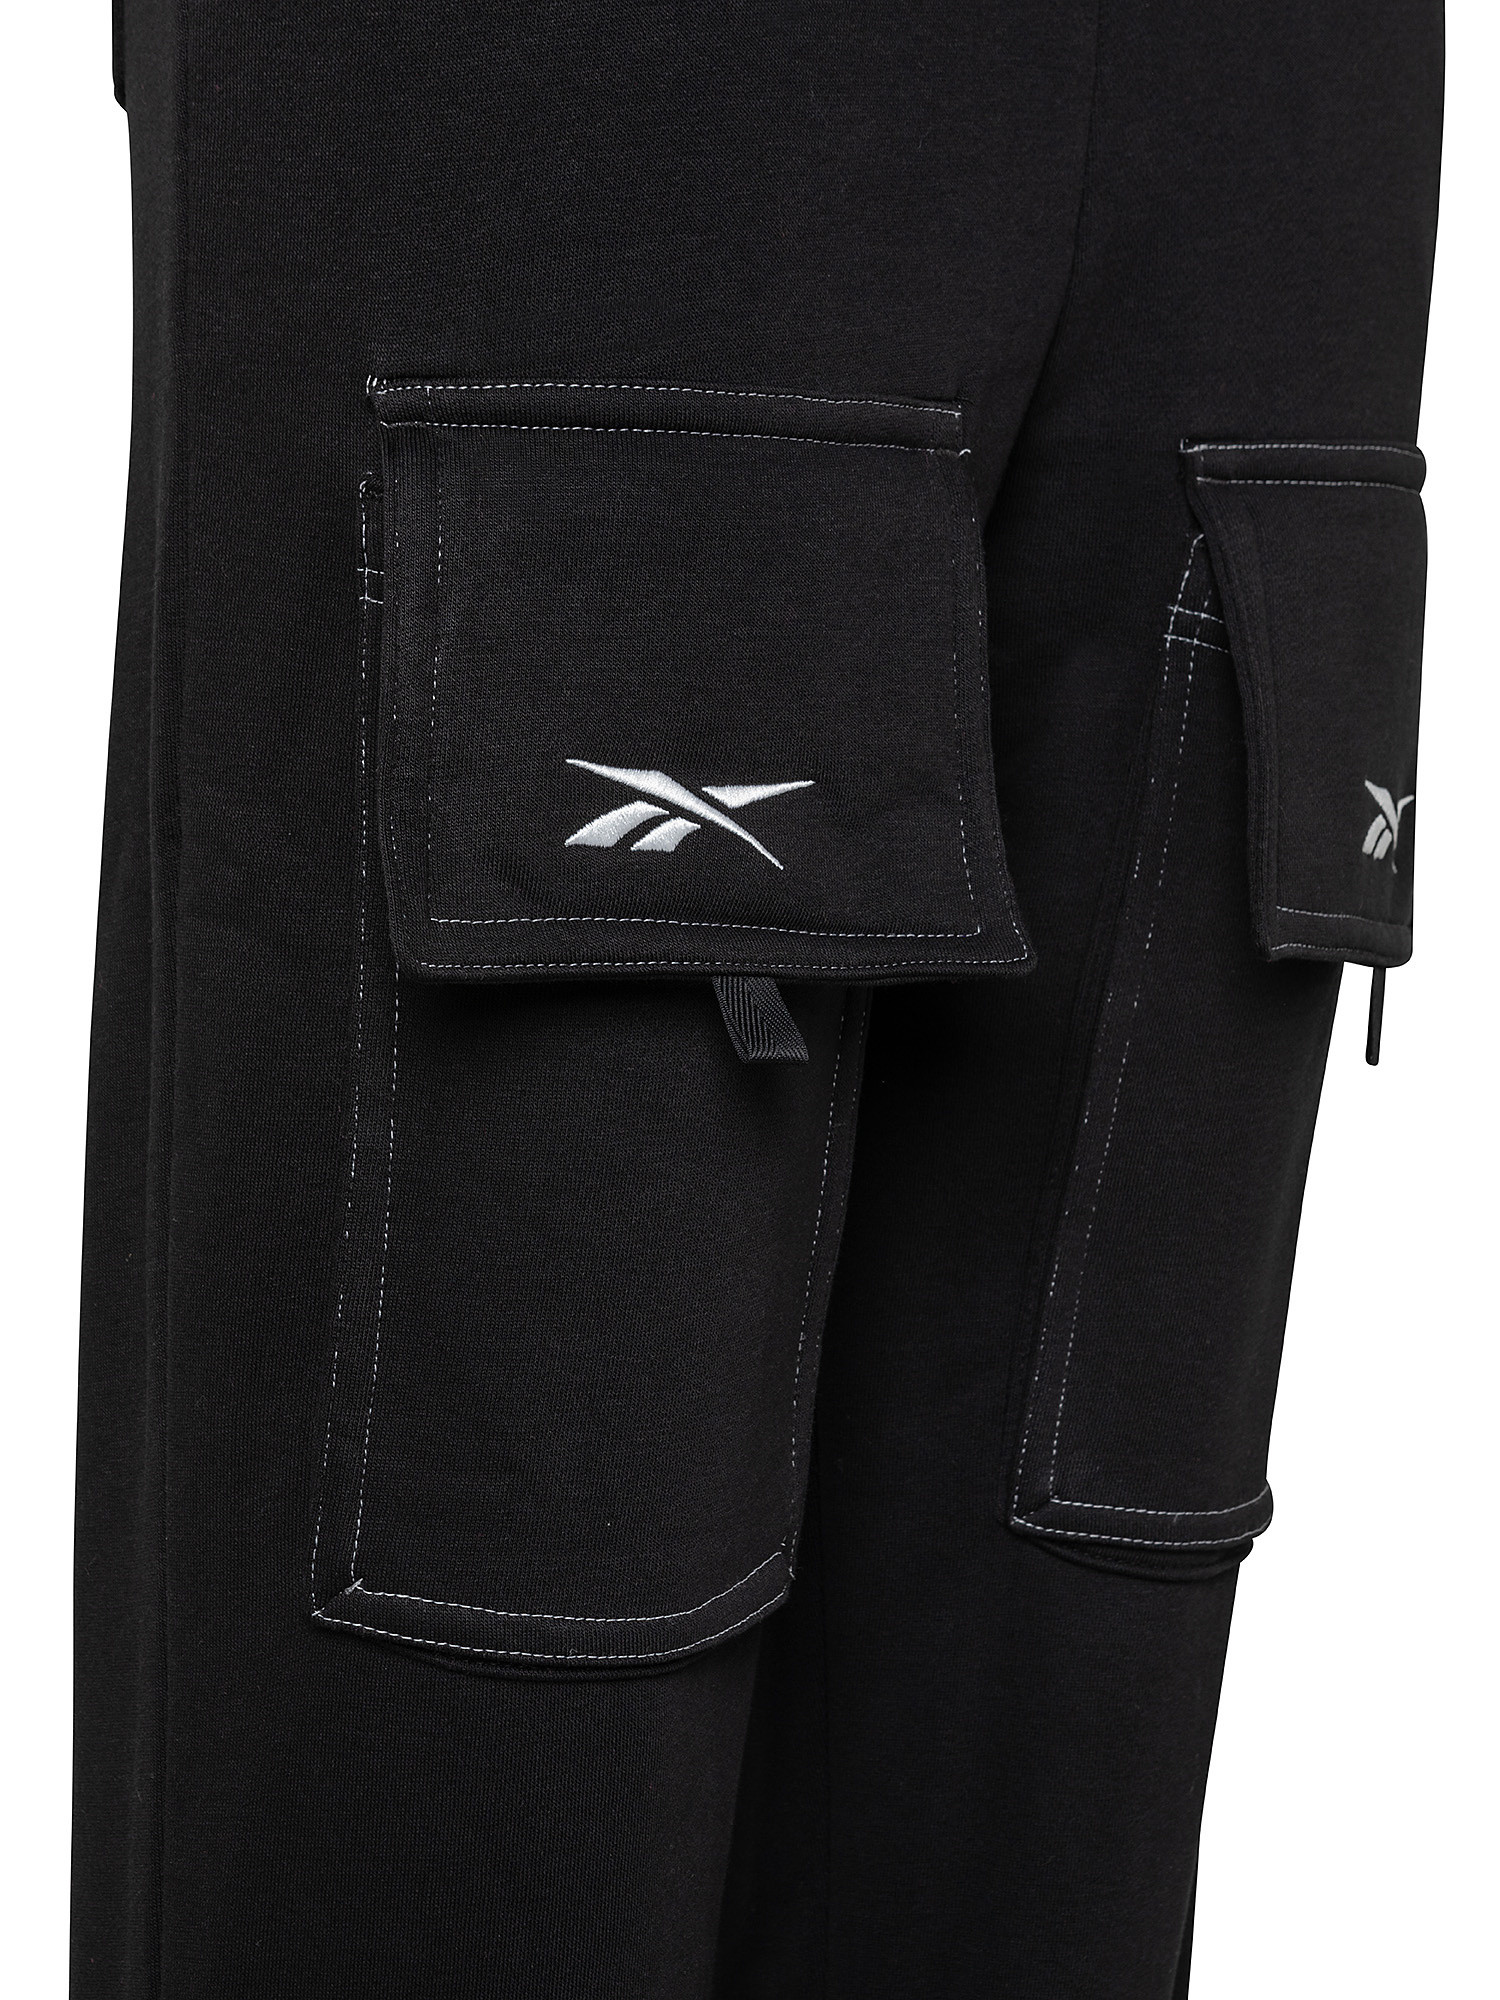 Cardi B Knit Pants, Black, large image number 2